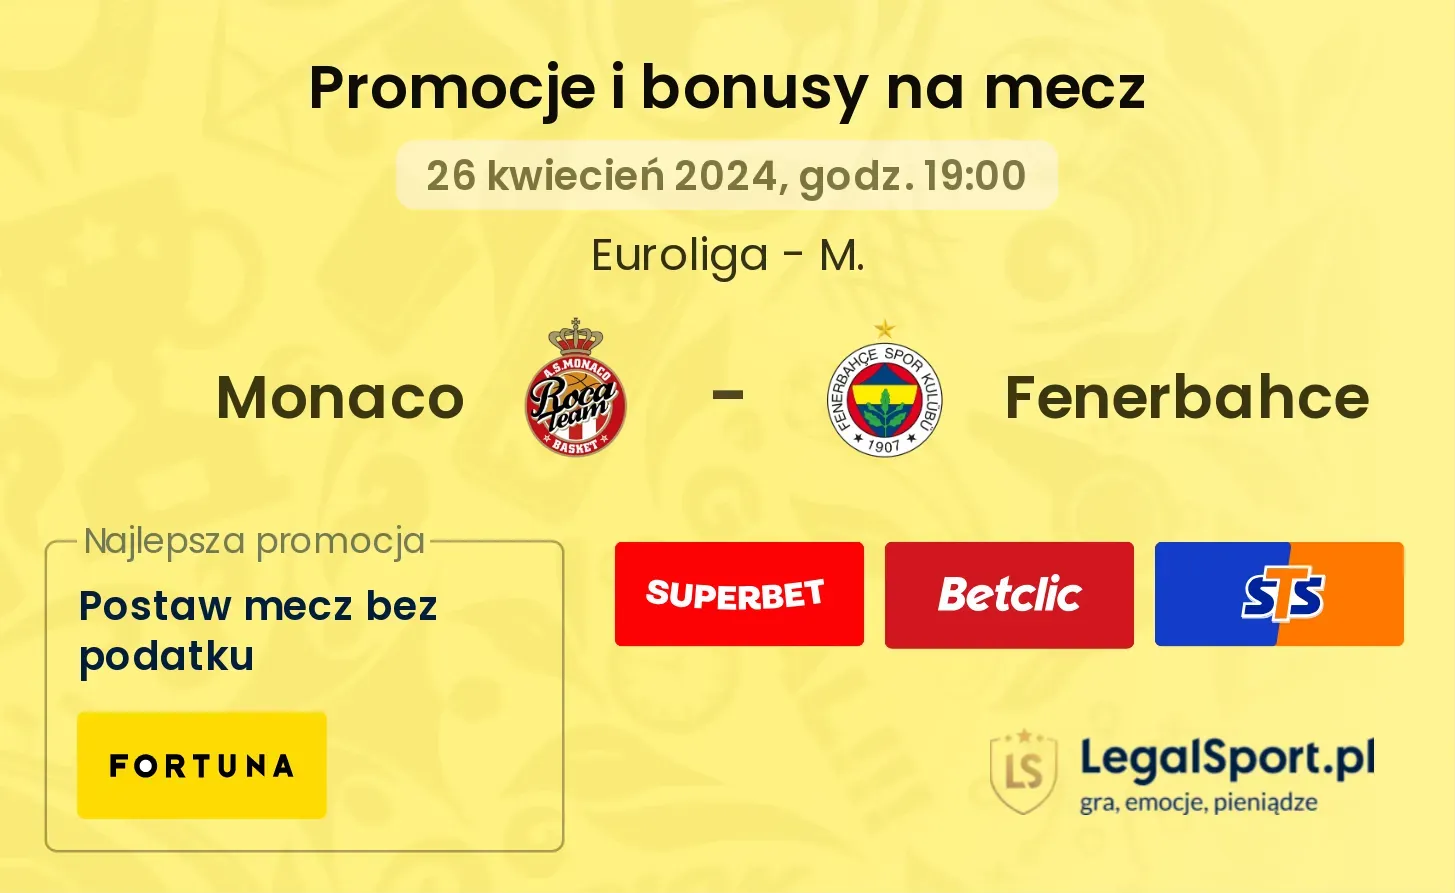 Monaco - Fenerbahce promocje bonusy na mecz